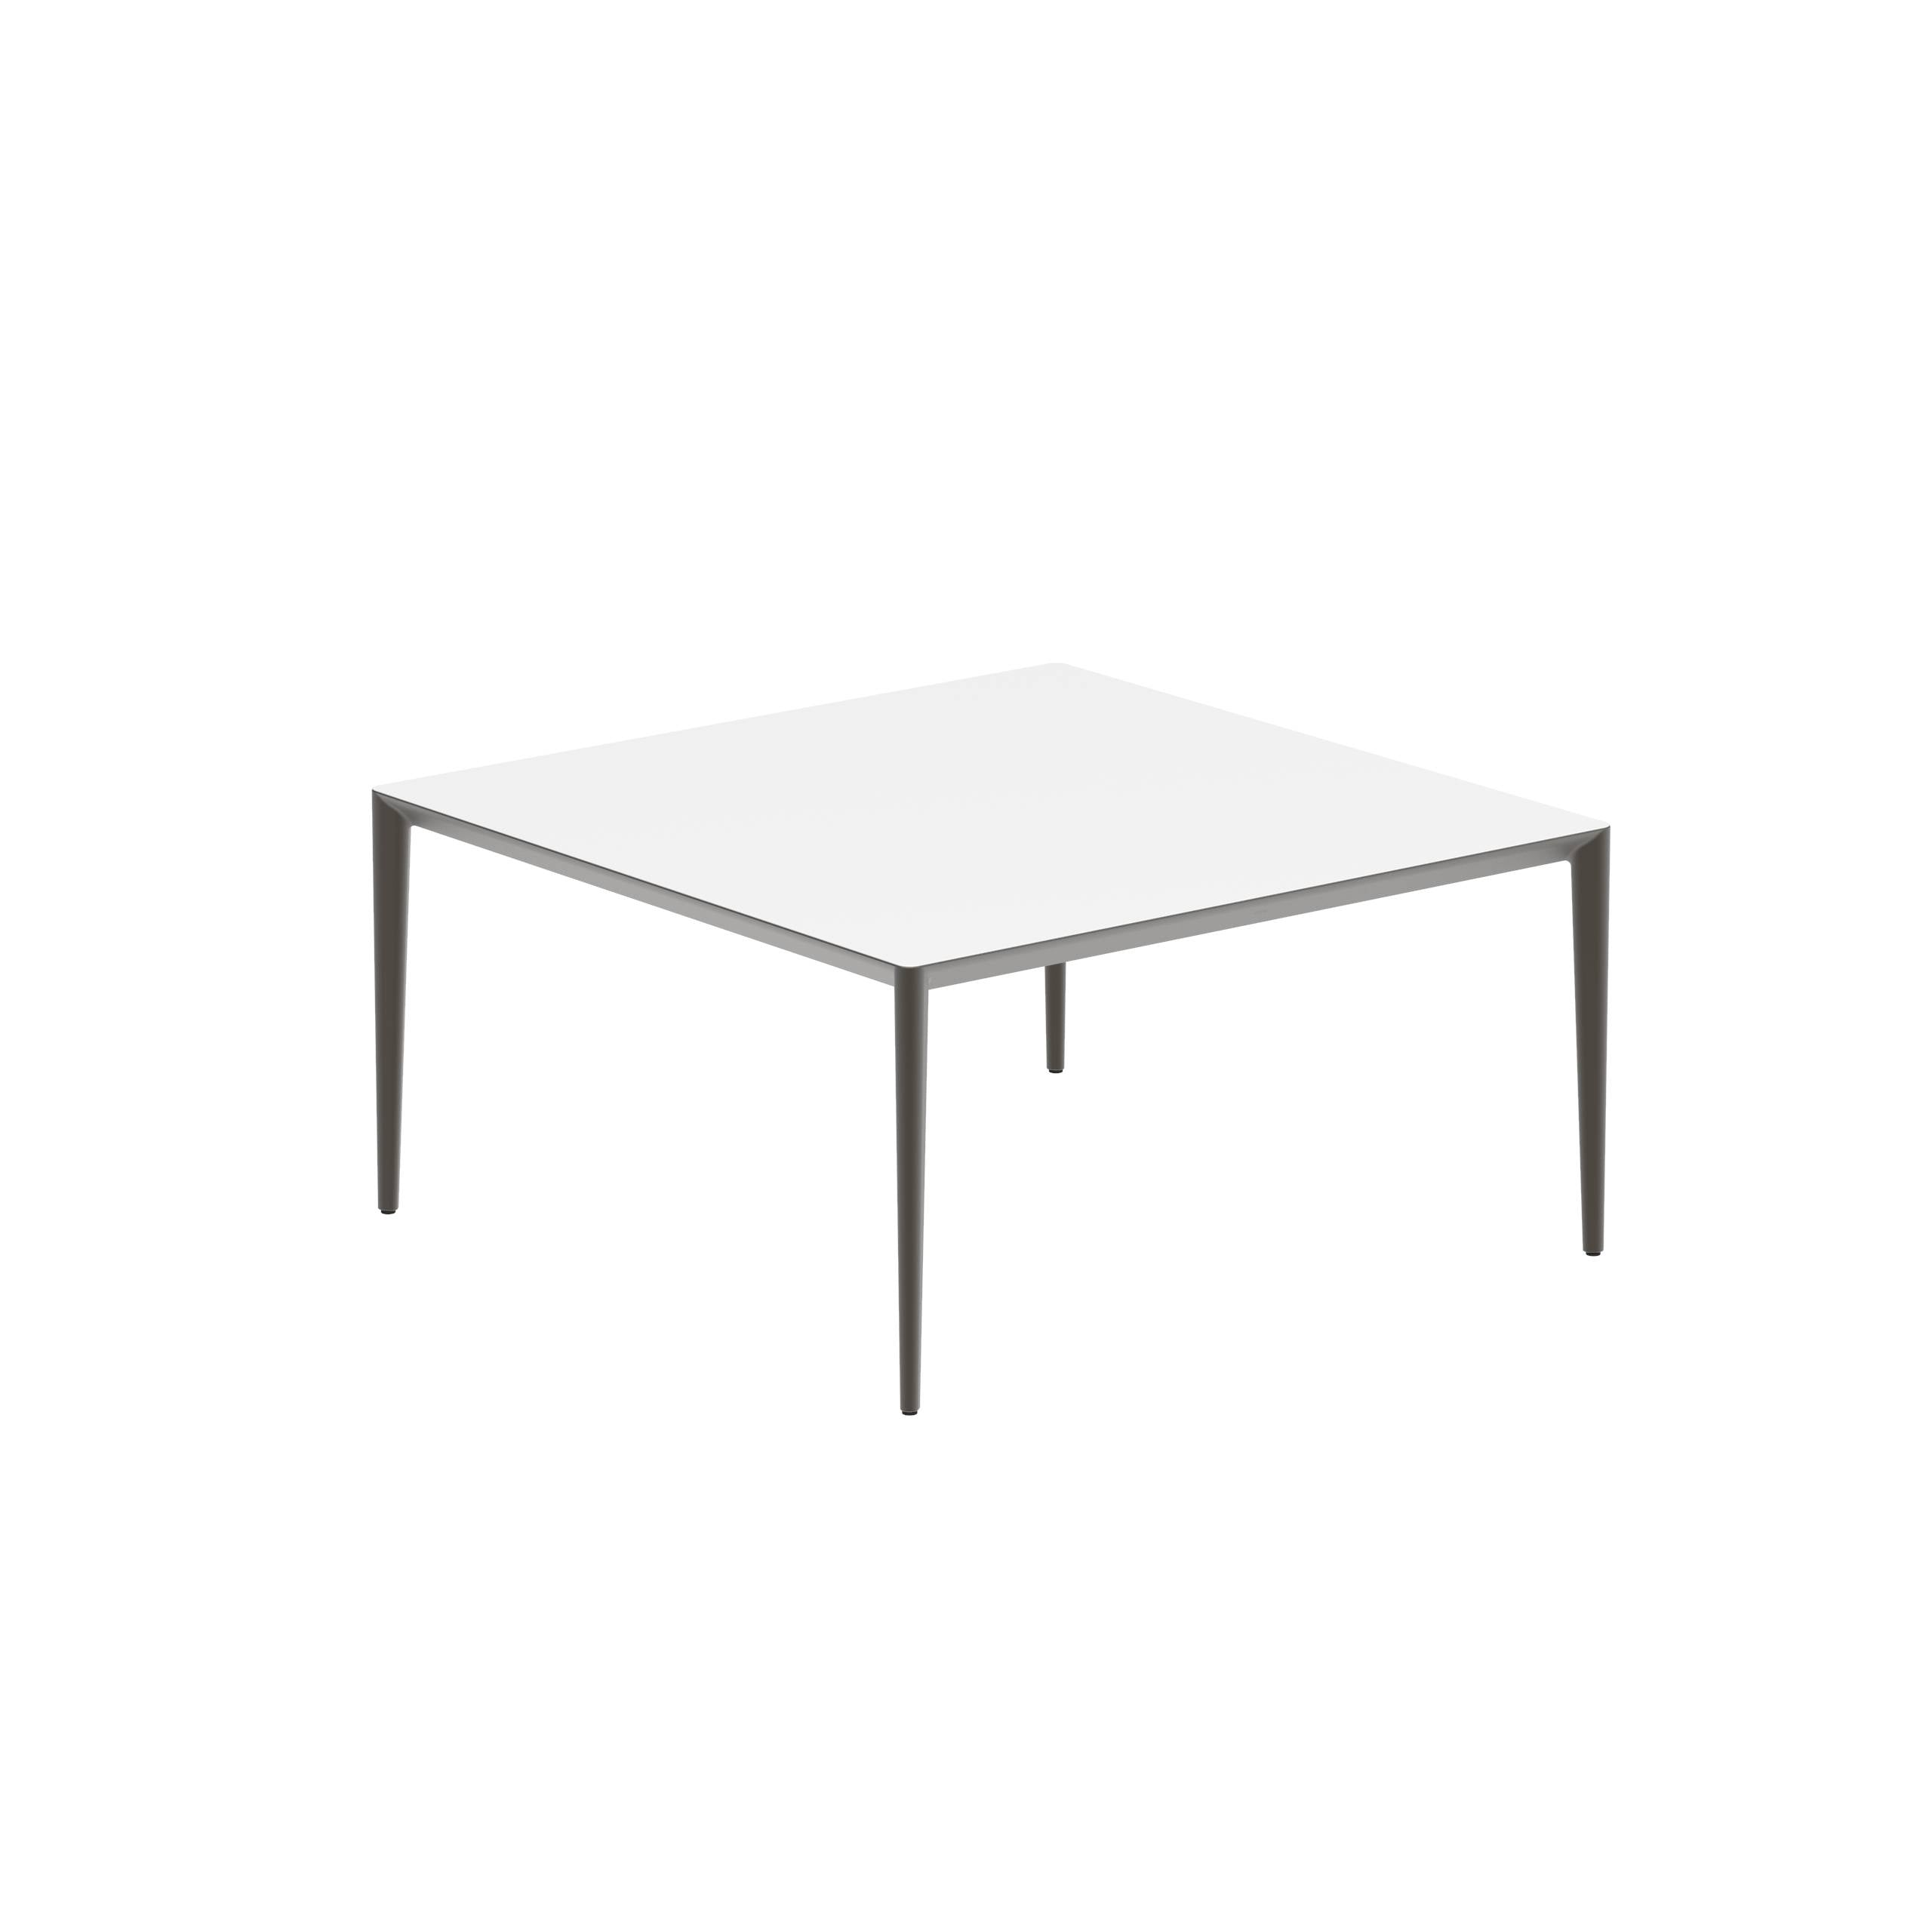 U-Nite Table 150x150cm Bronze With Ceramic Tabletop In White